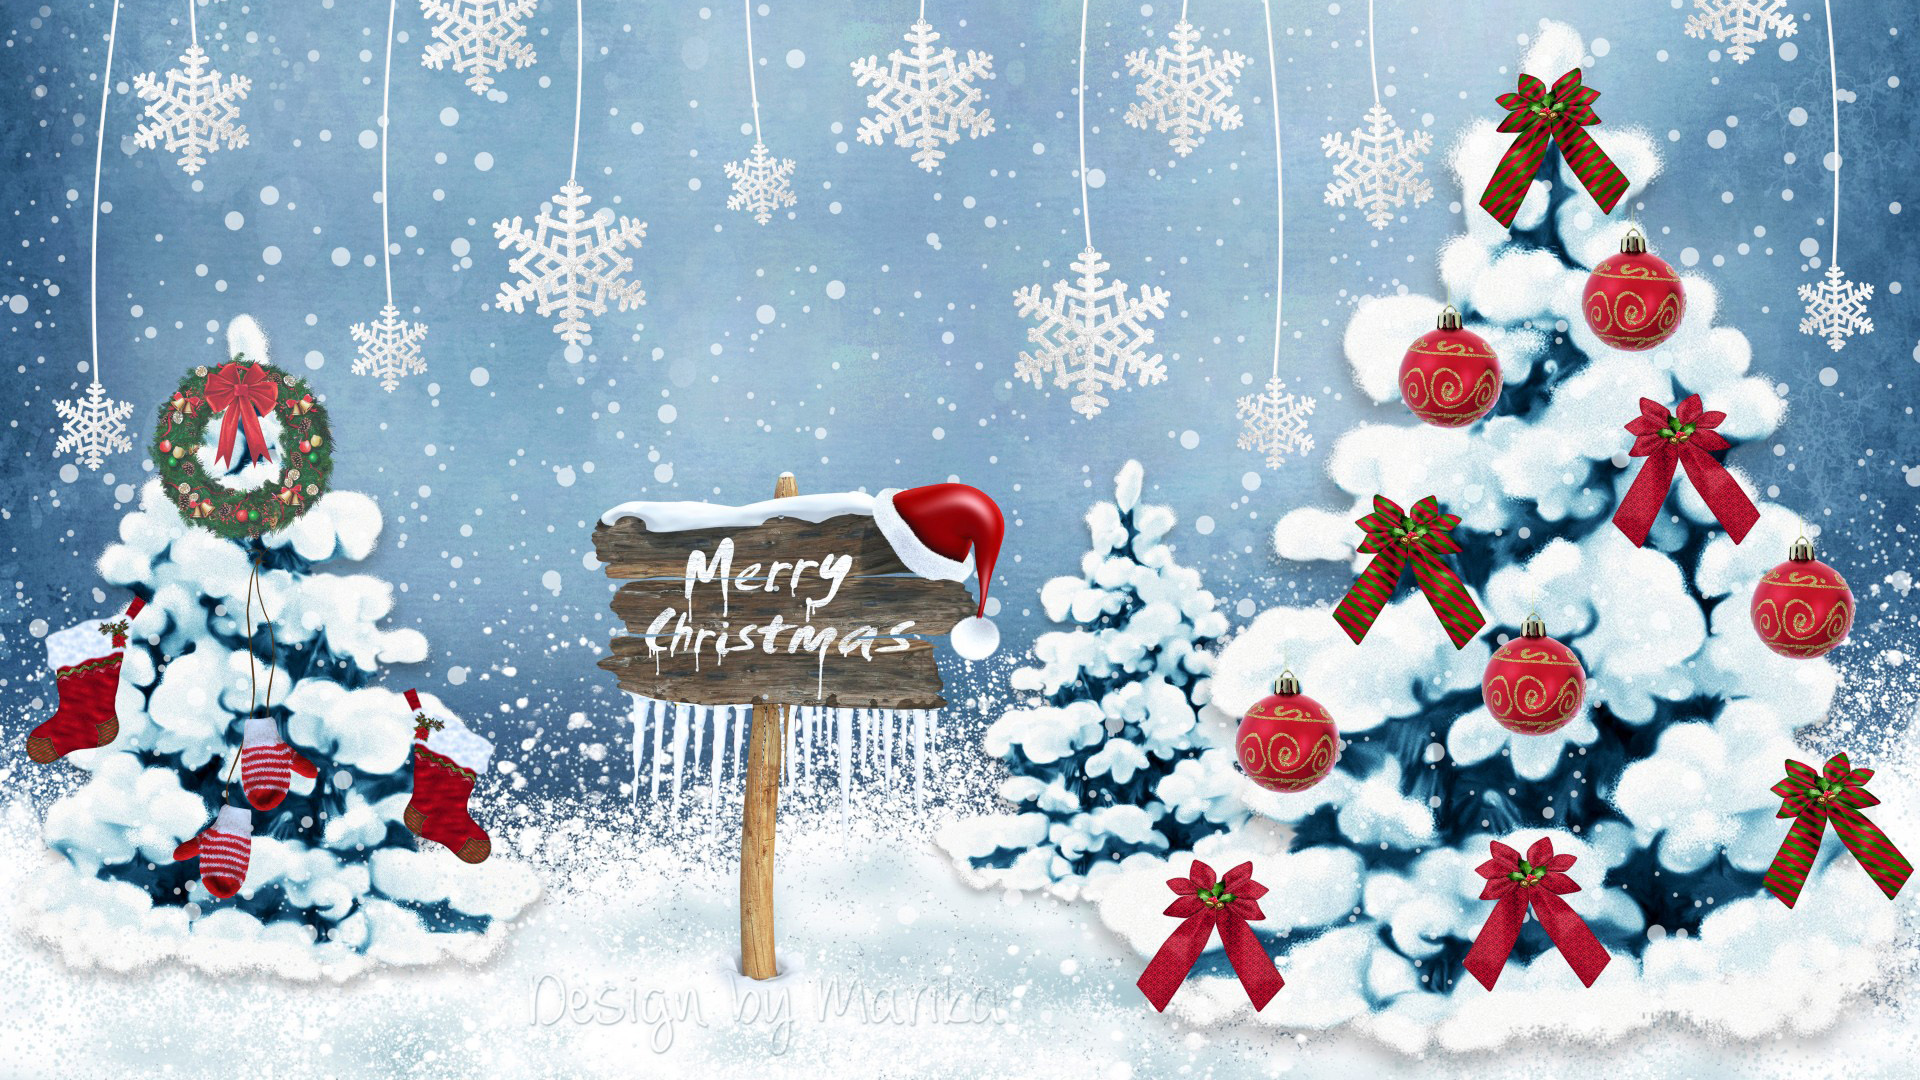 圣诞树,圣诞节,森林,树木,装饰,雪花,圣诞节快乐壁纸